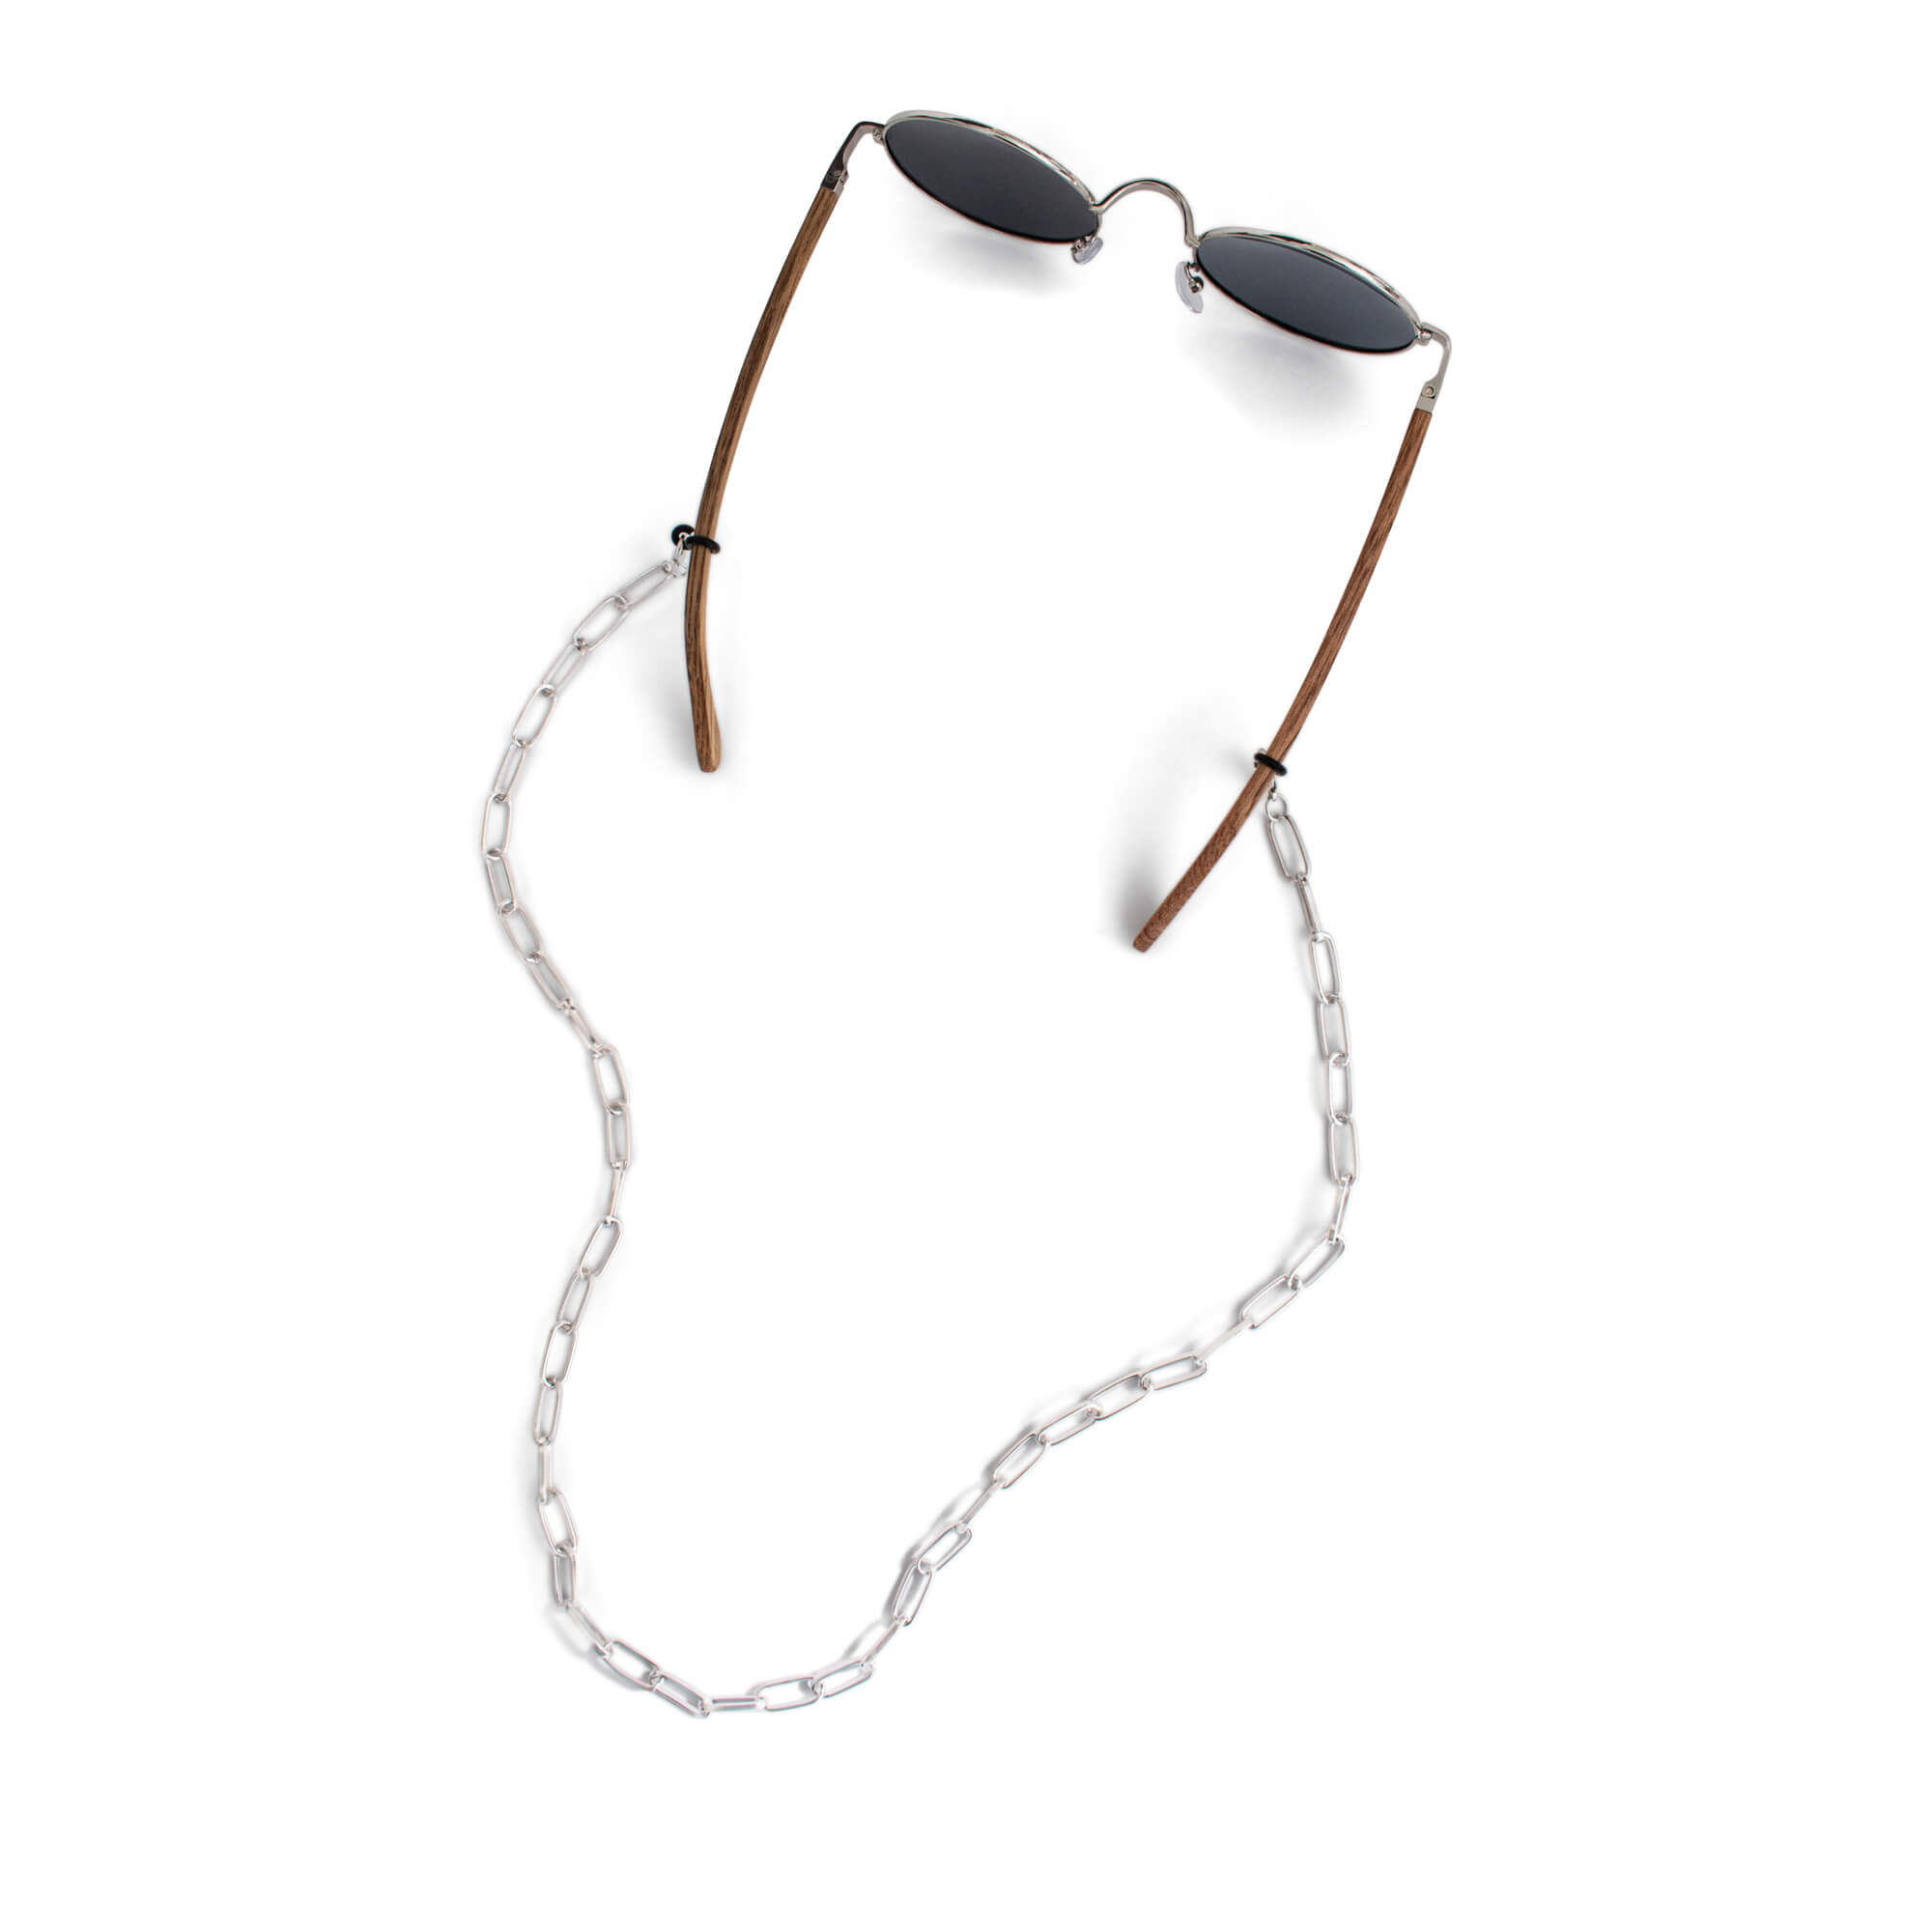 Thin metal Eyeglass Chains